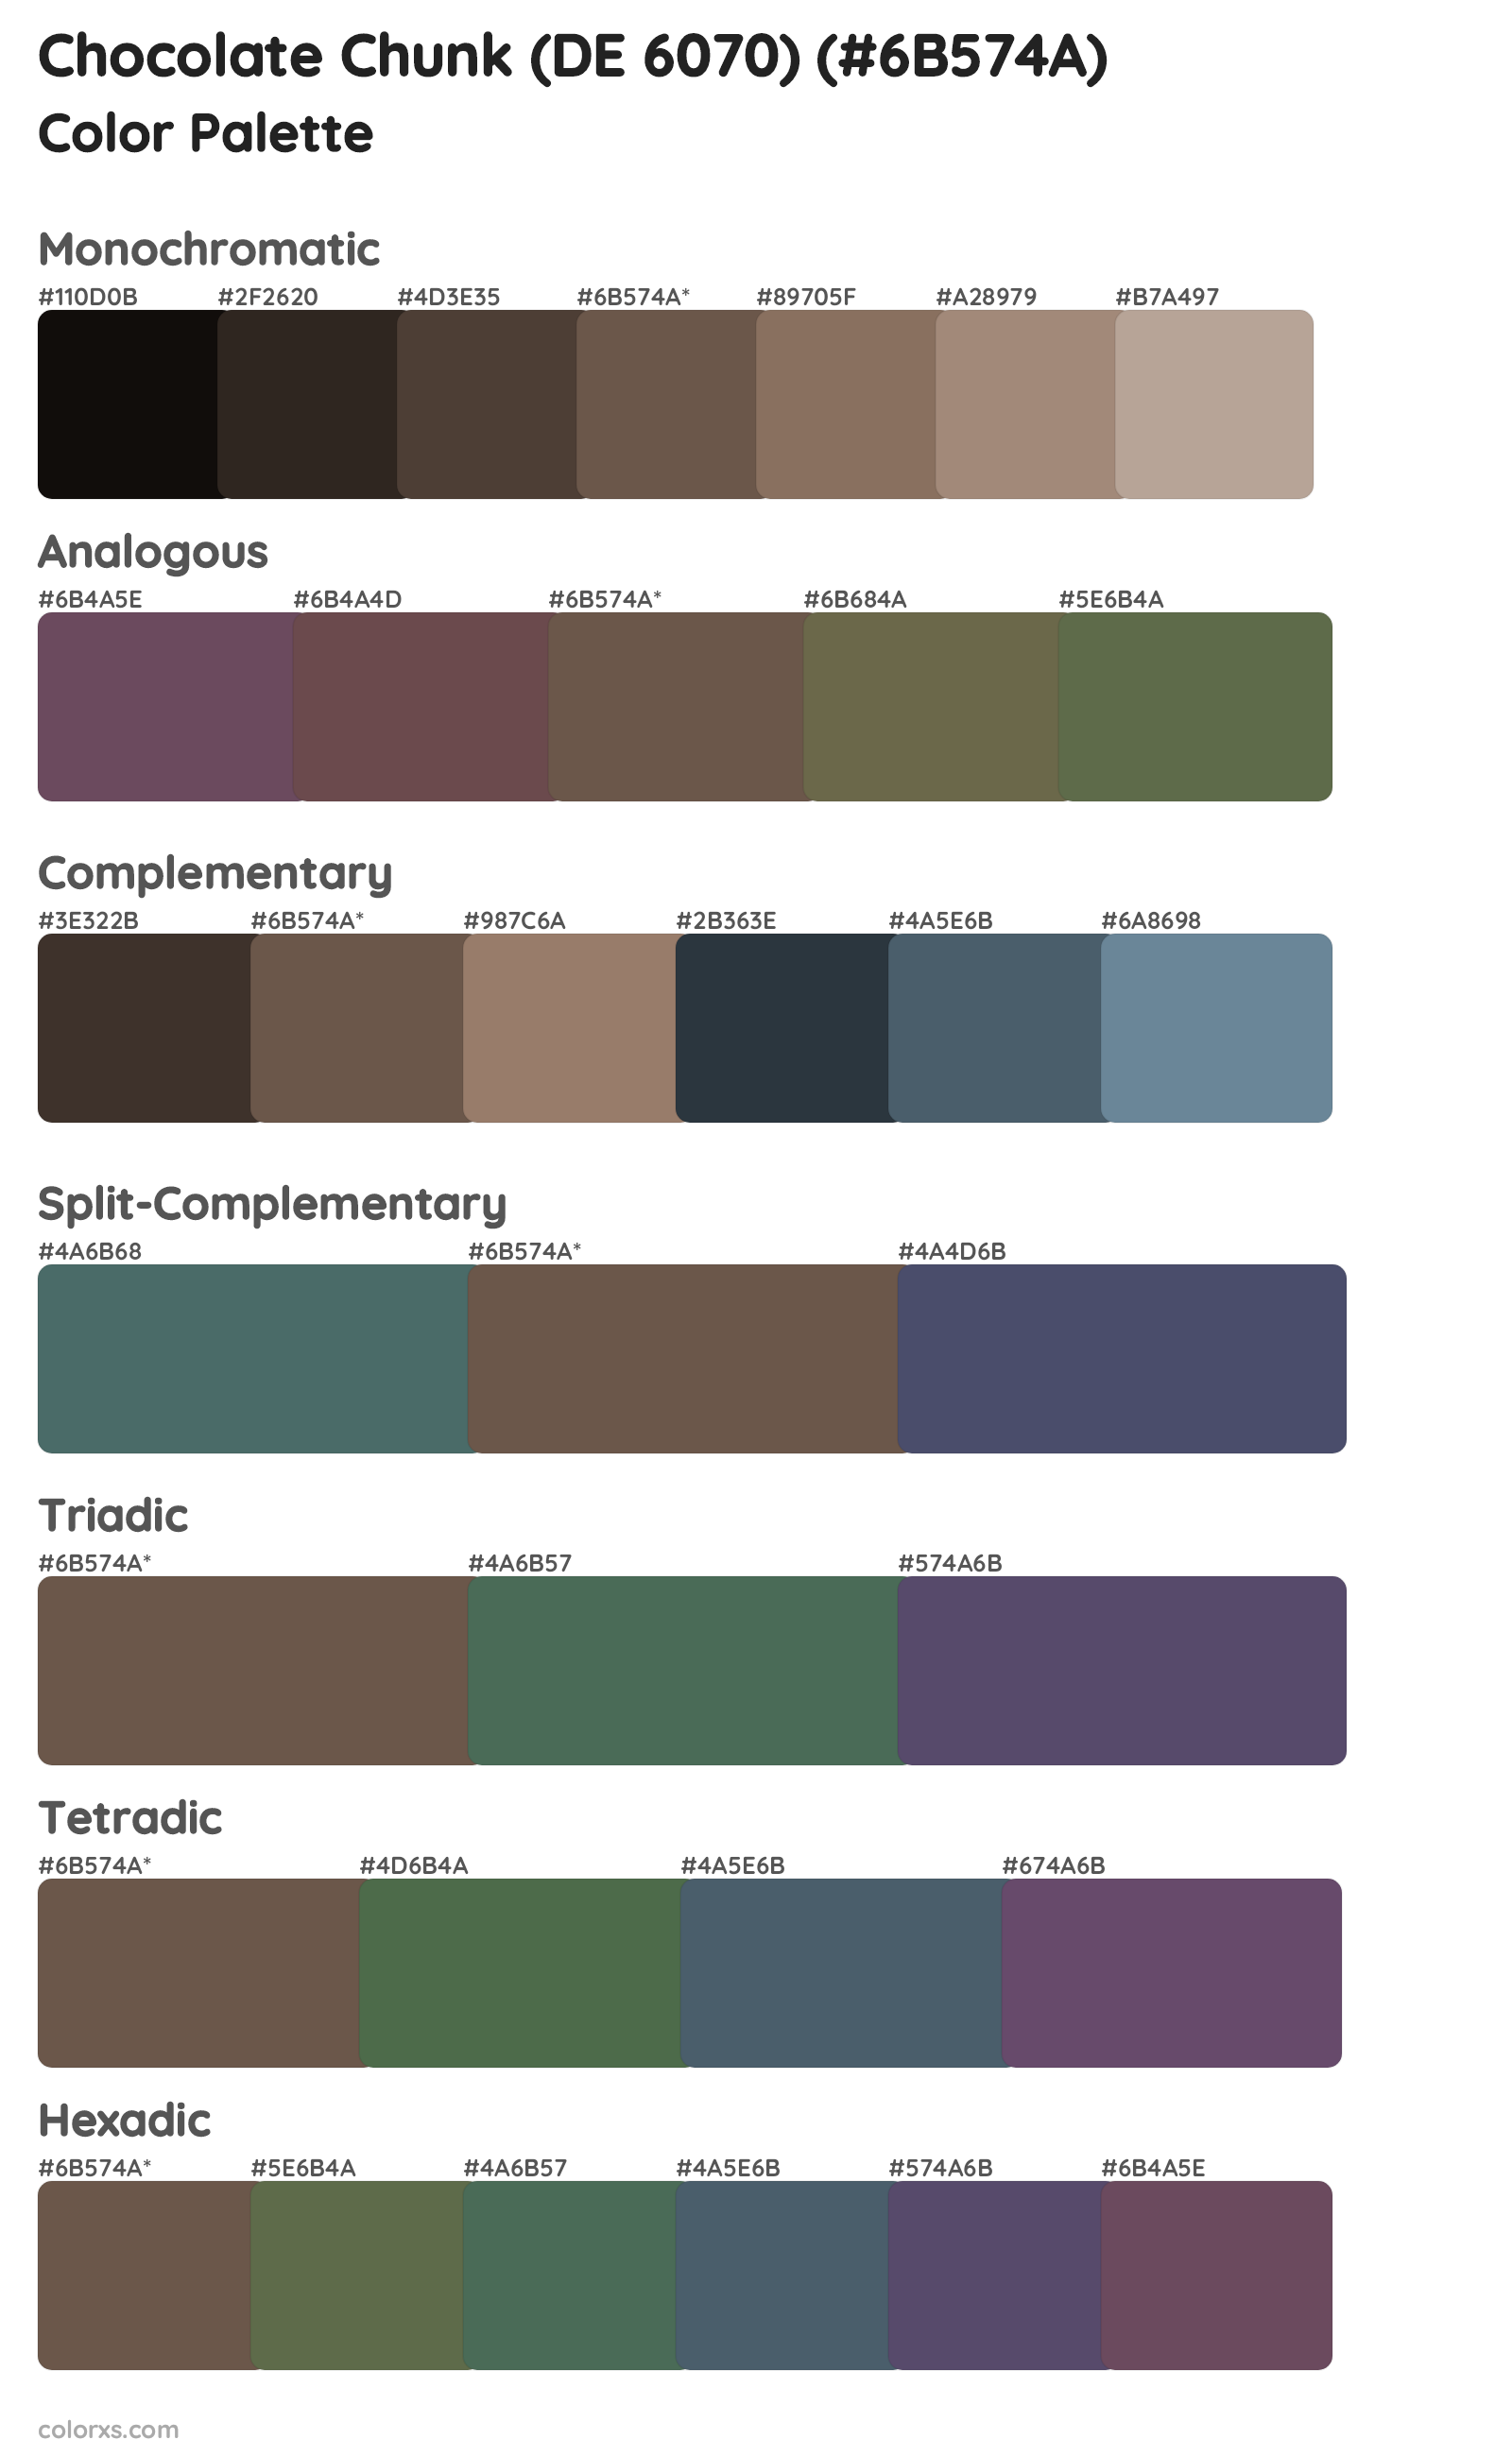 Chocolate Chunk (DE 6070) Color Scheme Palettes